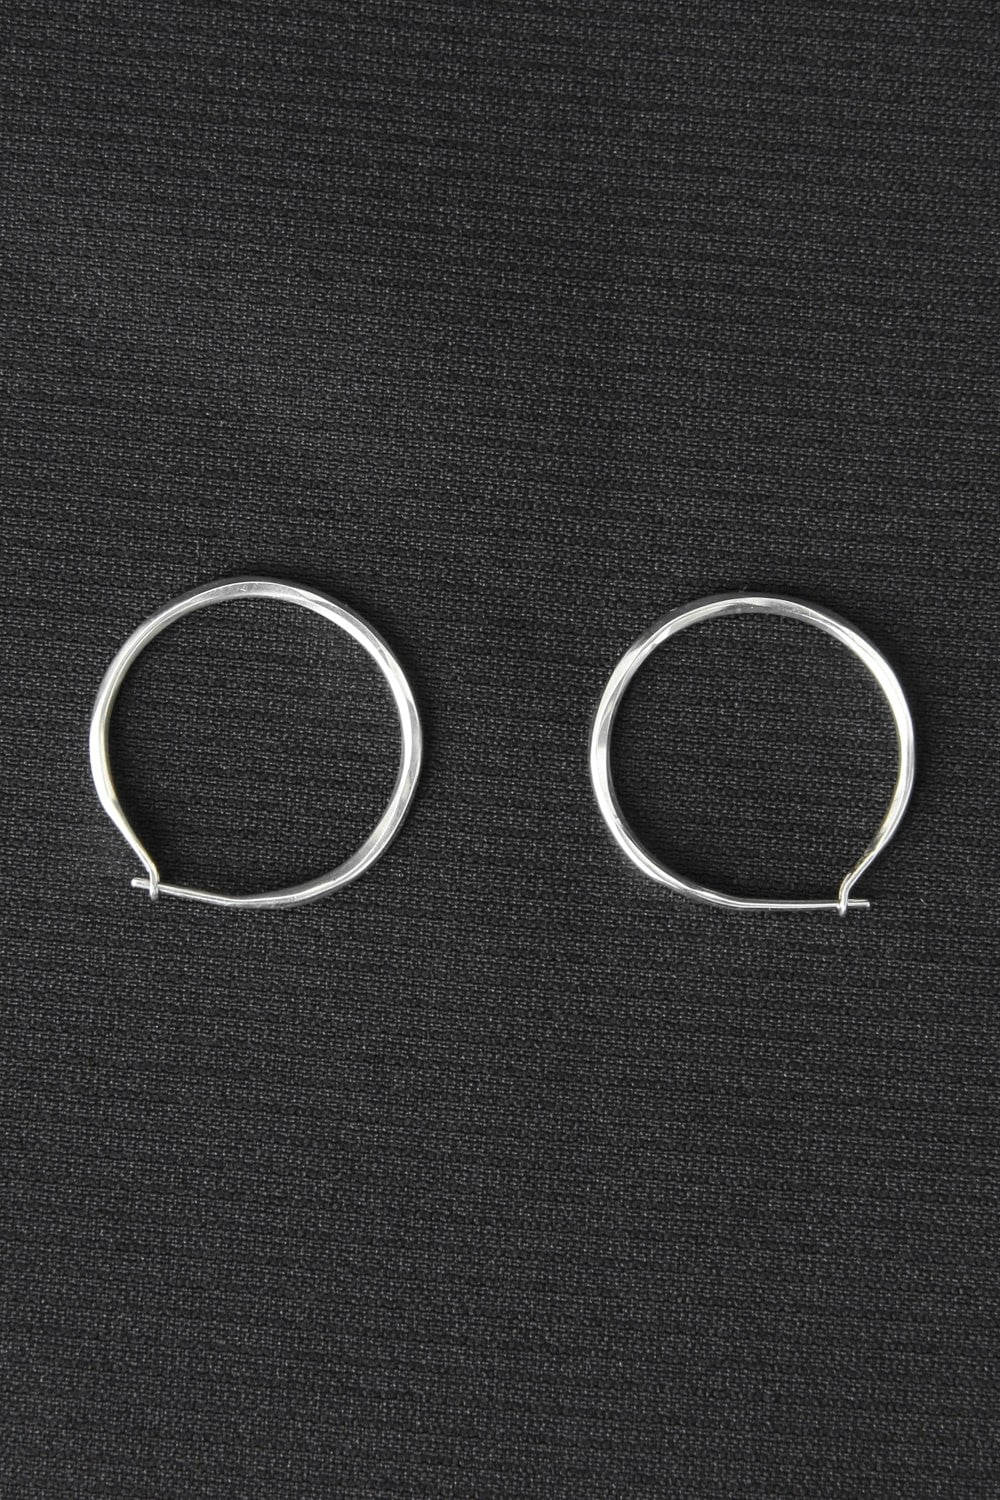 M4512 | Hoop Earrings Fine Hammered | WERKSTATT:MÜNCHEN | Online